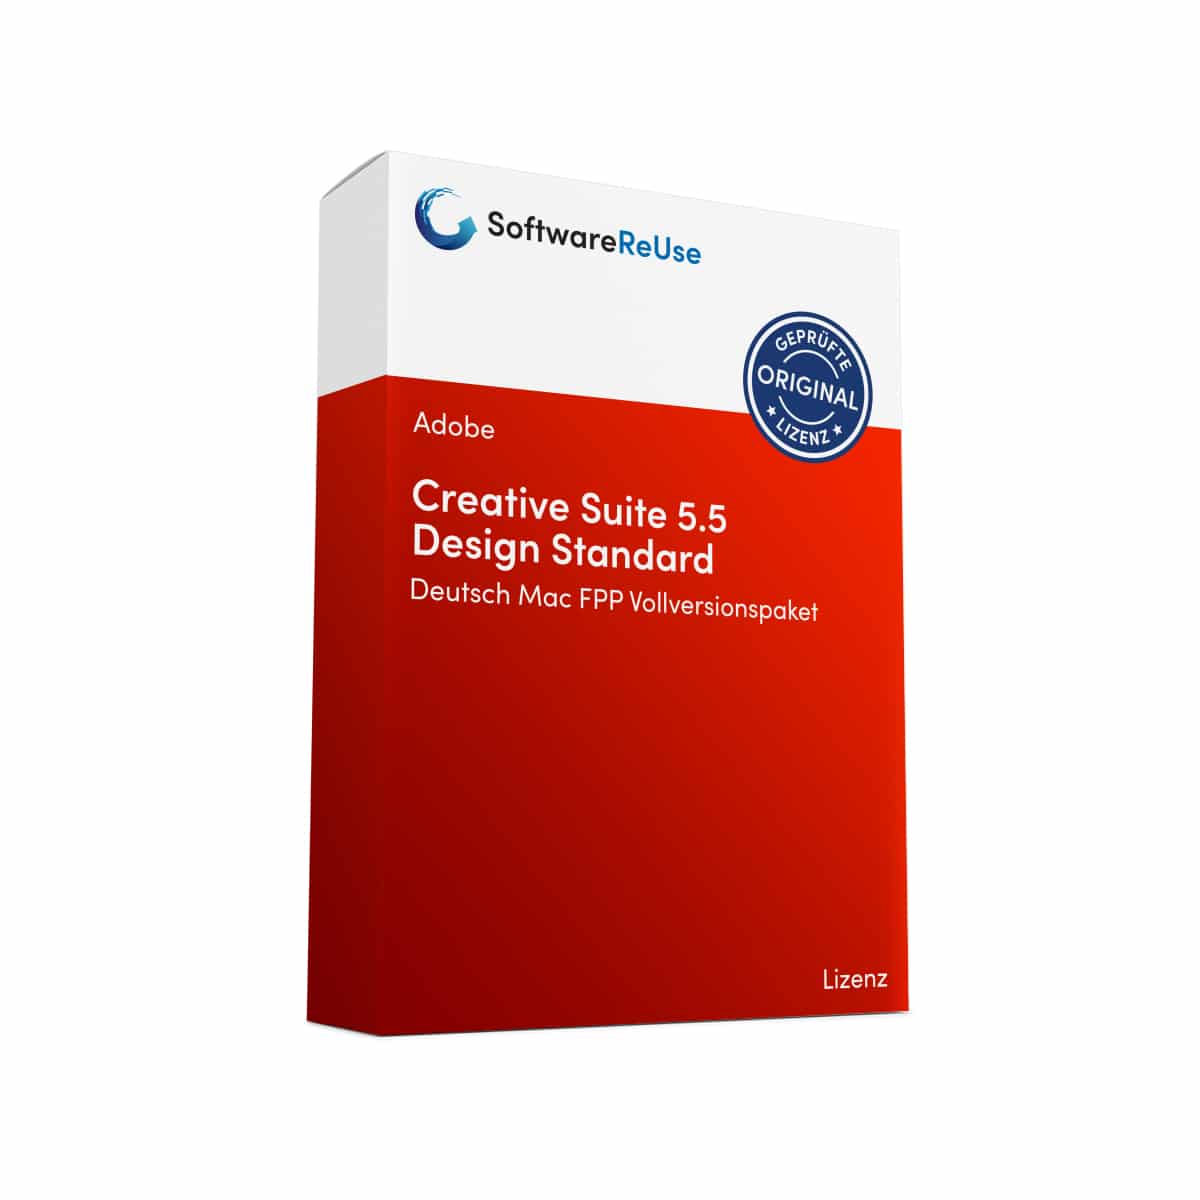 Creative Suite 5.5 Design Standard FPP Vollversionspaket – DE 1